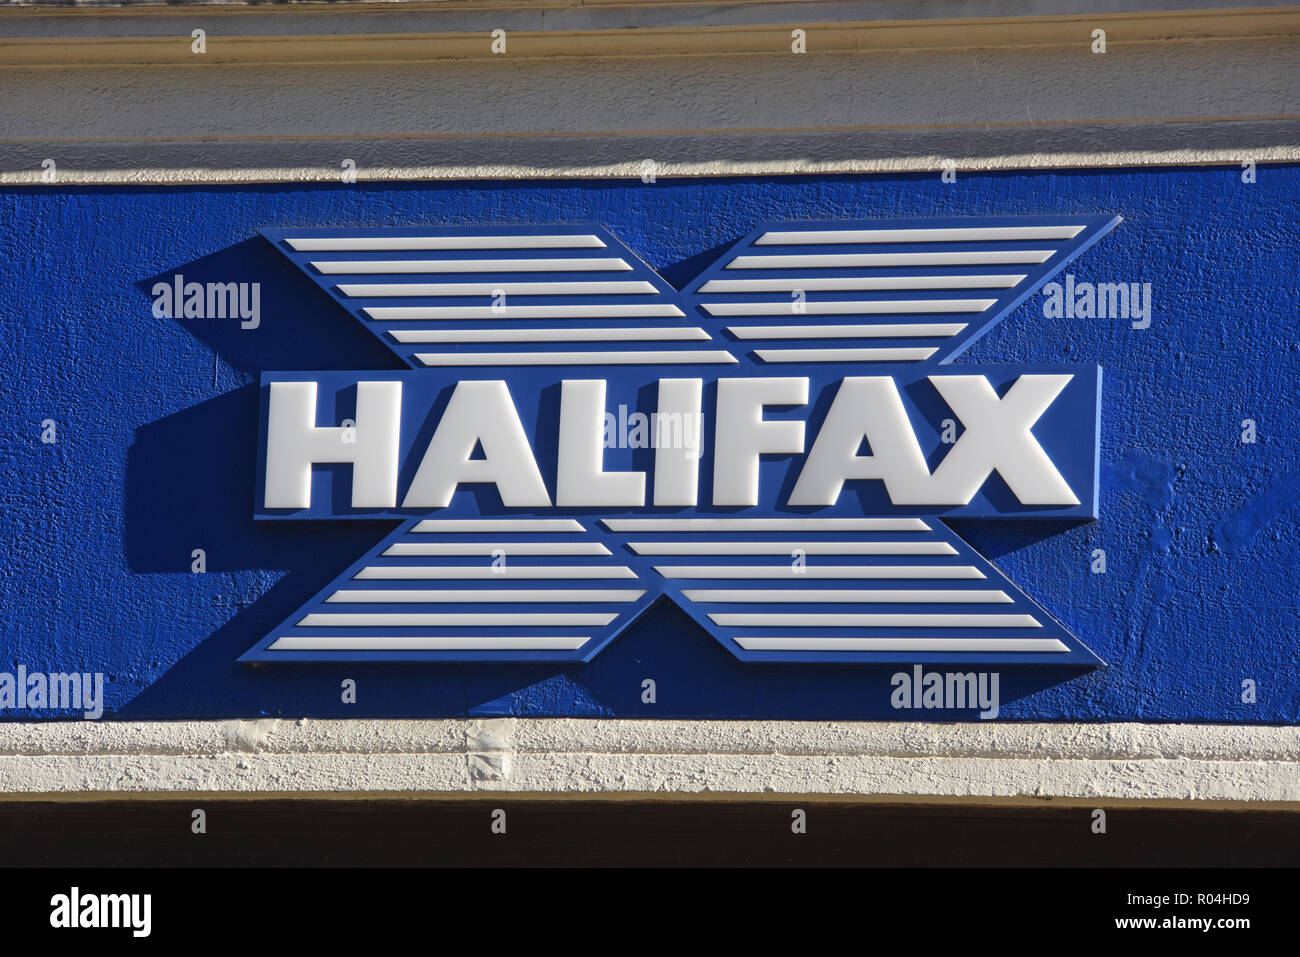 Halifax bank logo sopra Filiale banca regno unito Foto Stock